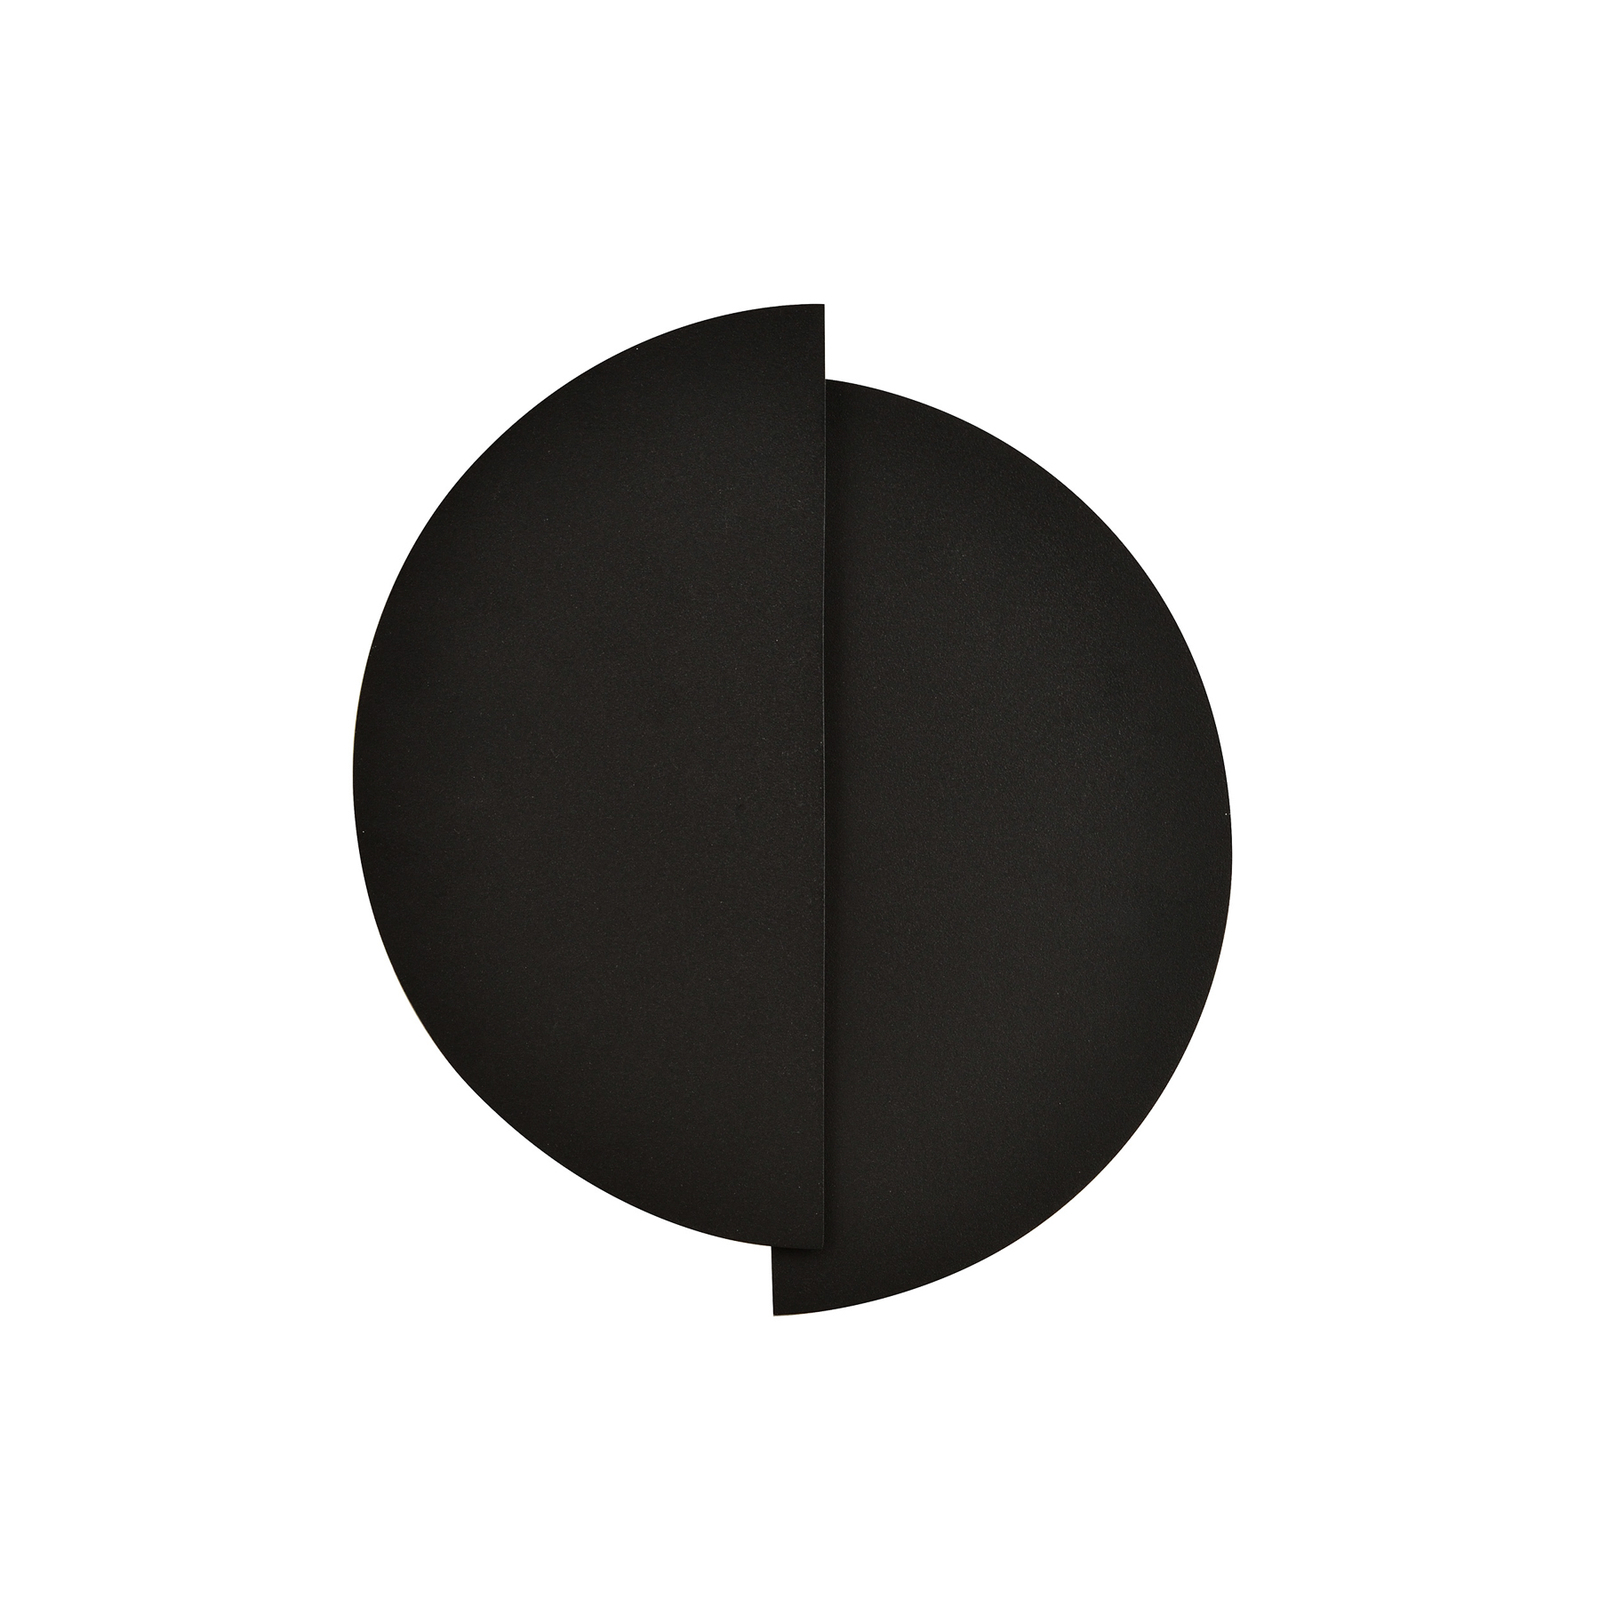 Kinkiet Form 9, 28 cm x 32 cm, czarny